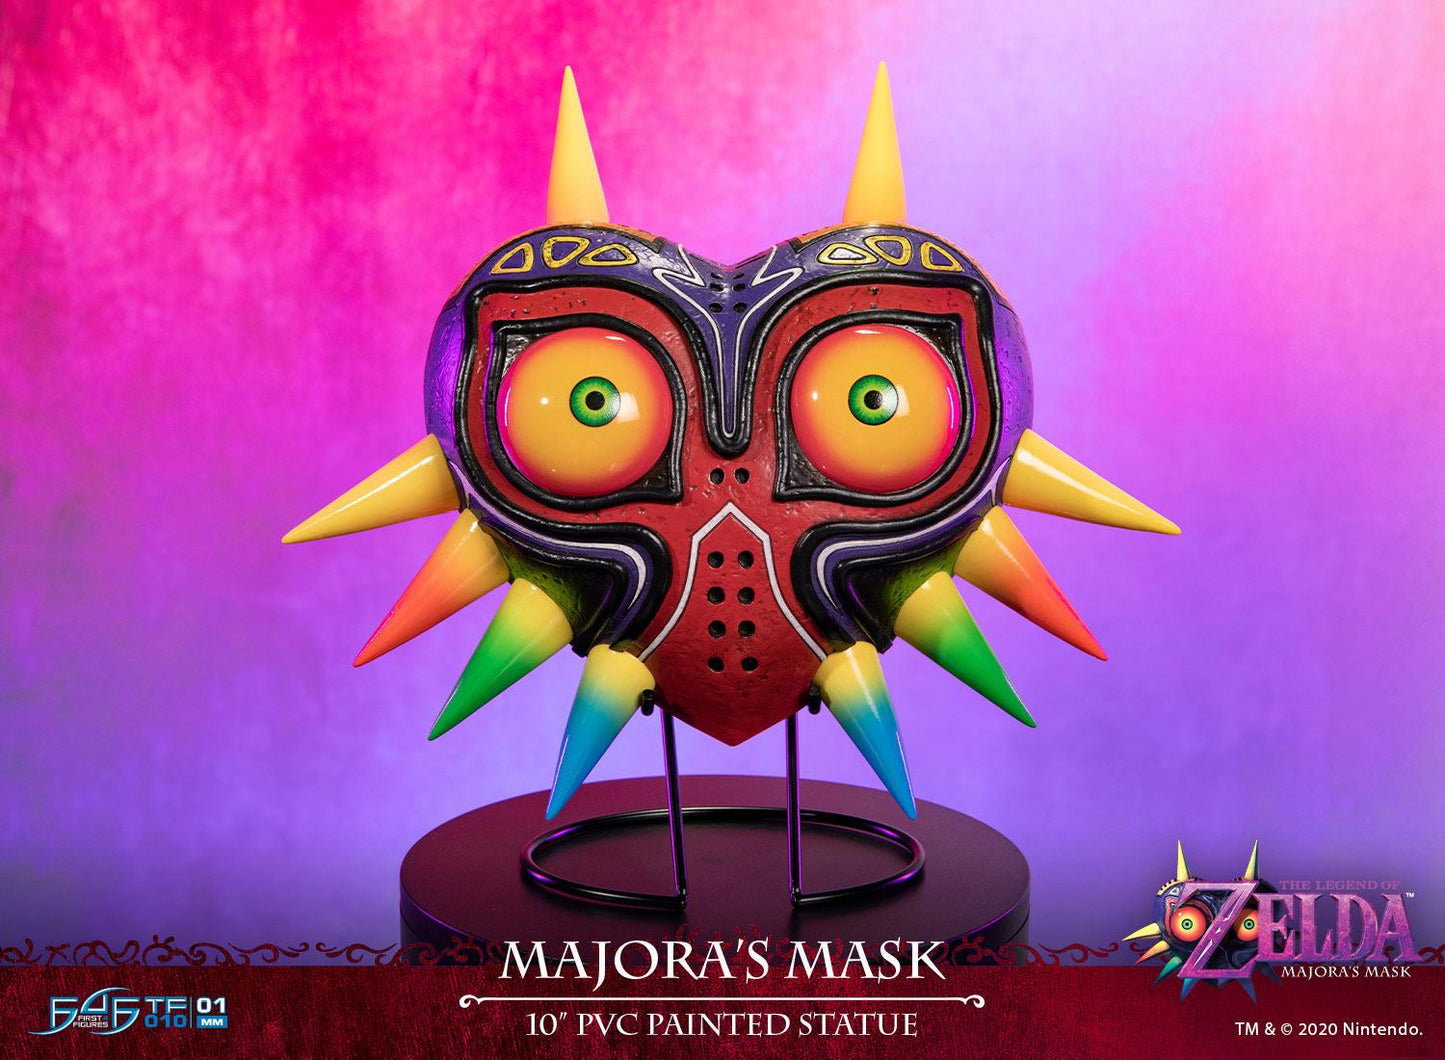 Majora's Mask Standard Edition / The Legend of Zelda